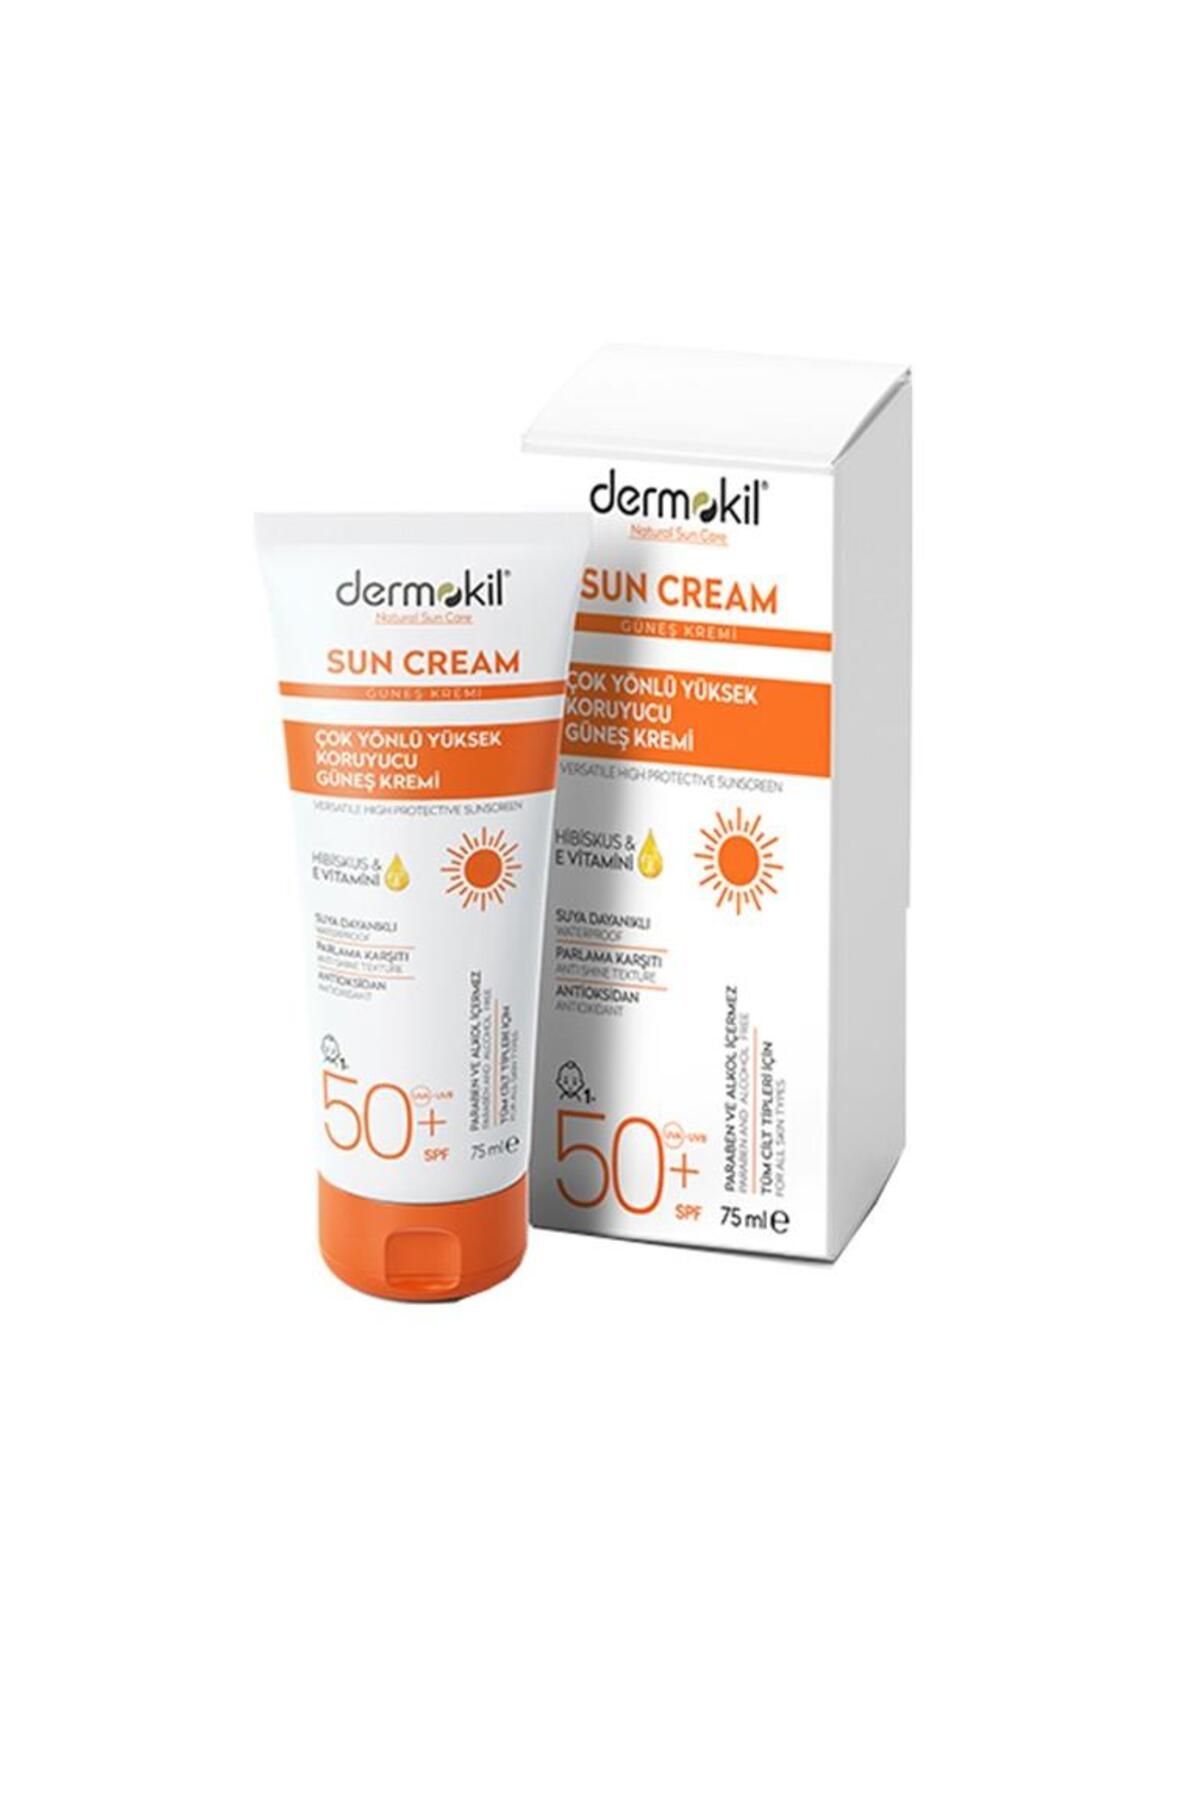 Dermokil Sun Cream-çok Yönlü Yüksek Koruyucu Güneş Kremi50 Spf 75 ml